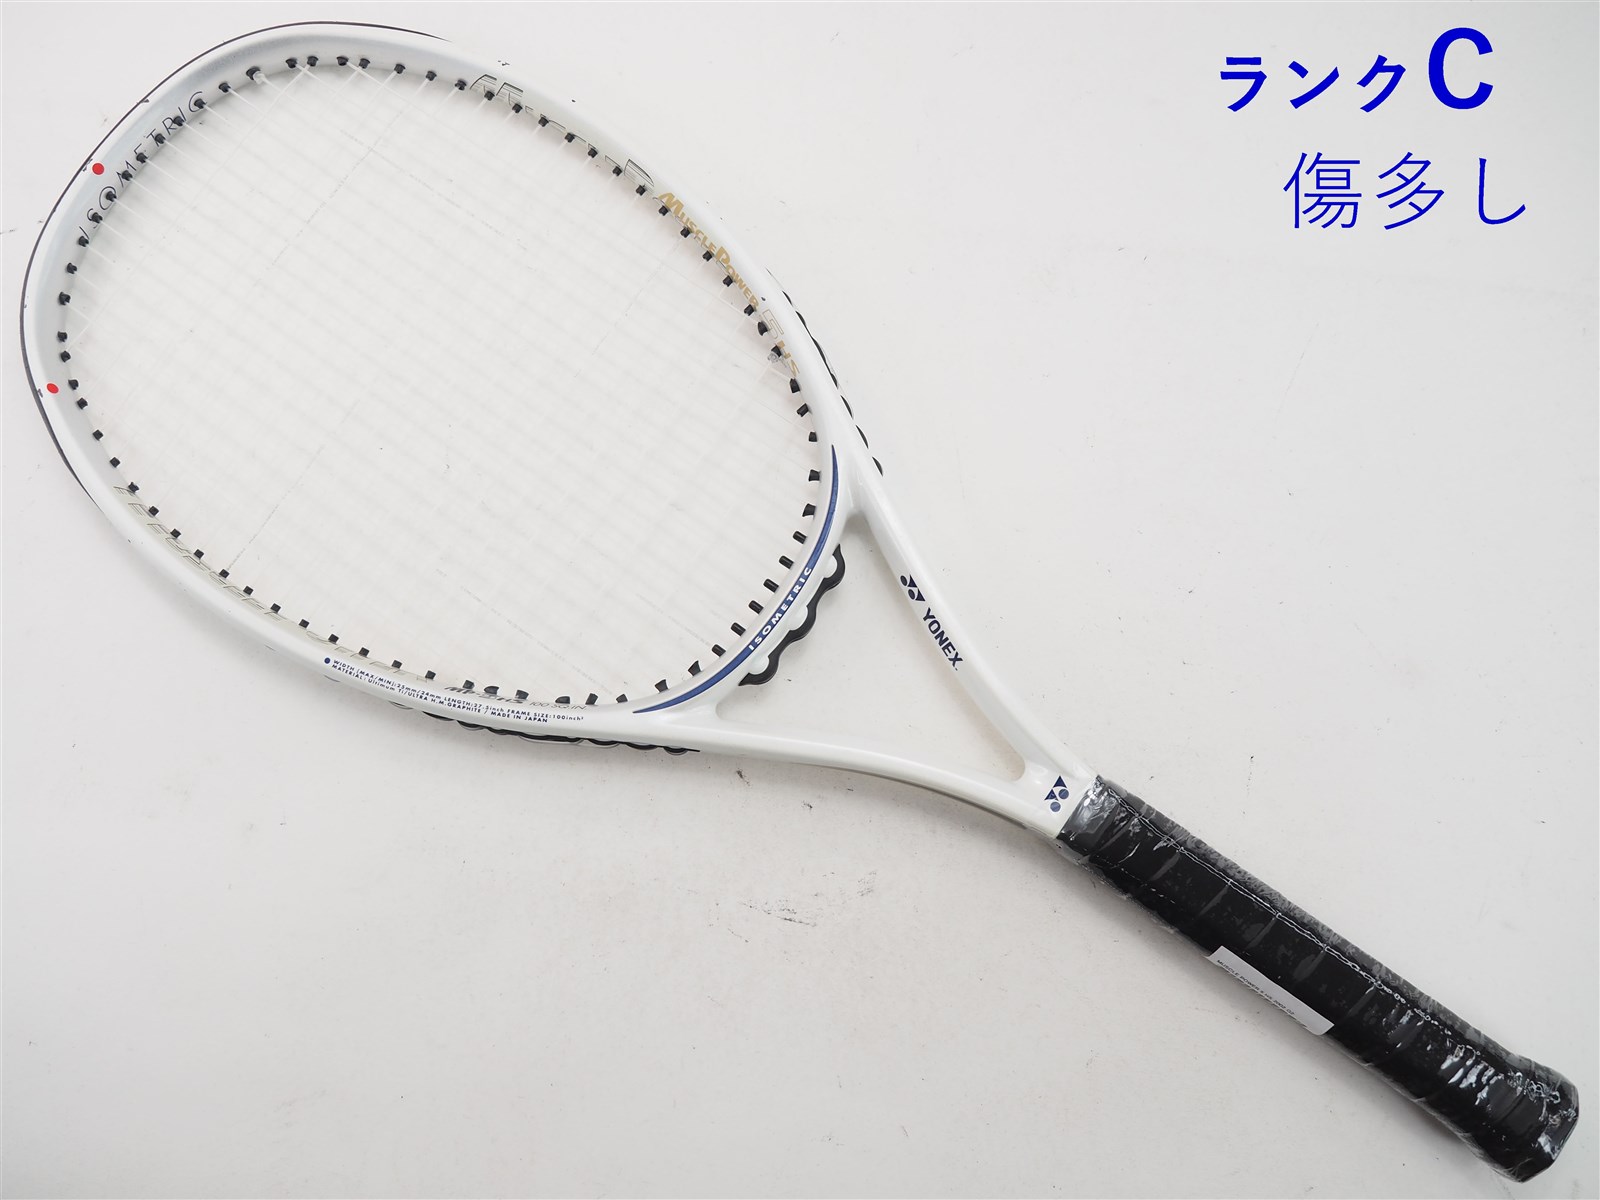 テニス 【中古】ヨネックス マッスルパワー 5 エイチエス 2002年モデルYONEX MUSCLE POWER 5 HS 2002(G2)【中古  テニスラケット】